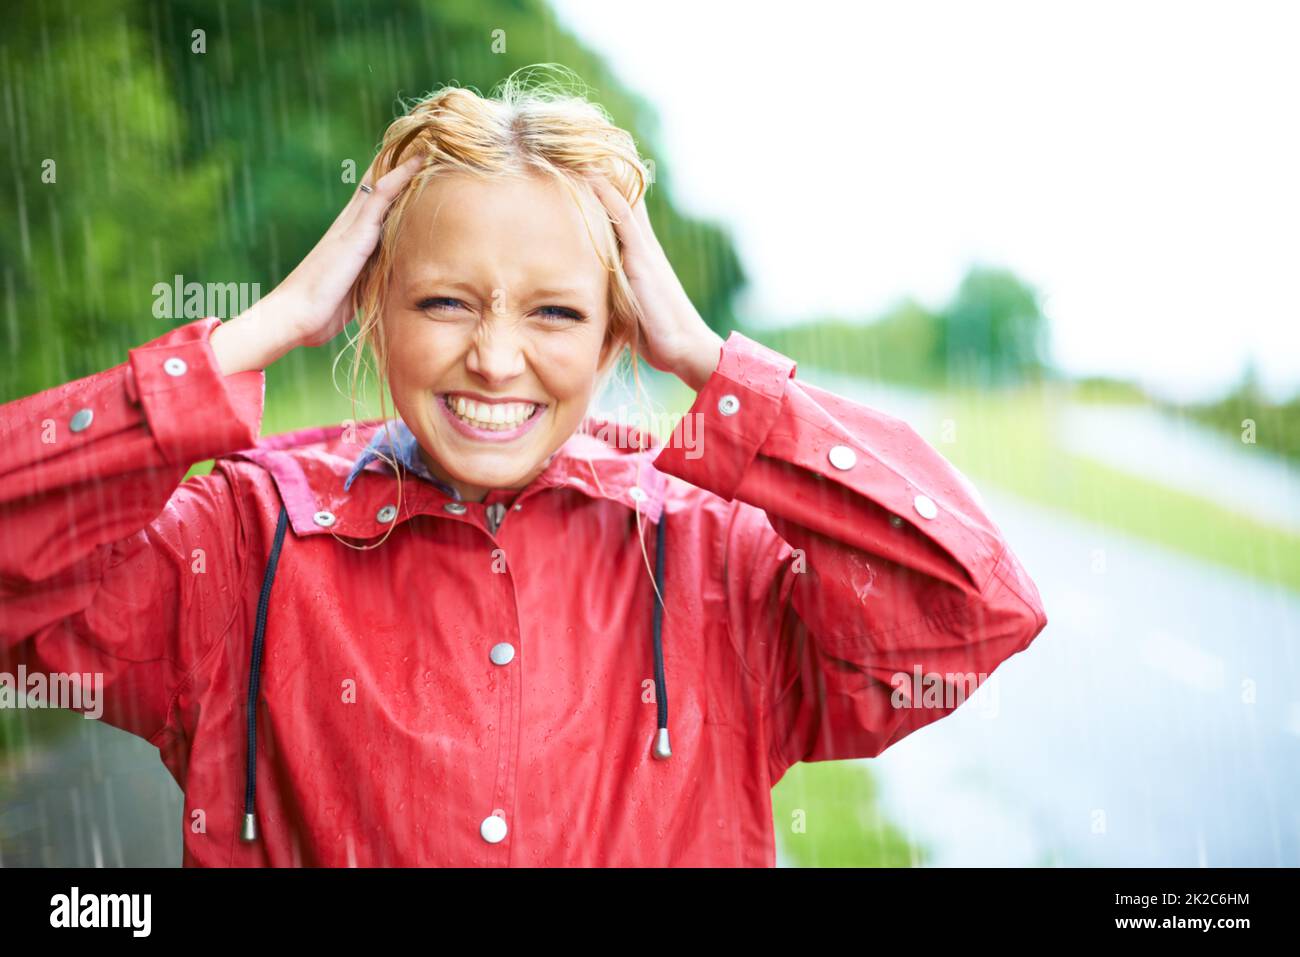 Nichts ist besser als ein wenig frisches Regenwasser. Wunderschöne junge blonde Frau trägt einen roten Regenmantel im Regen draußen auf einer Landstraße. Stockfoto